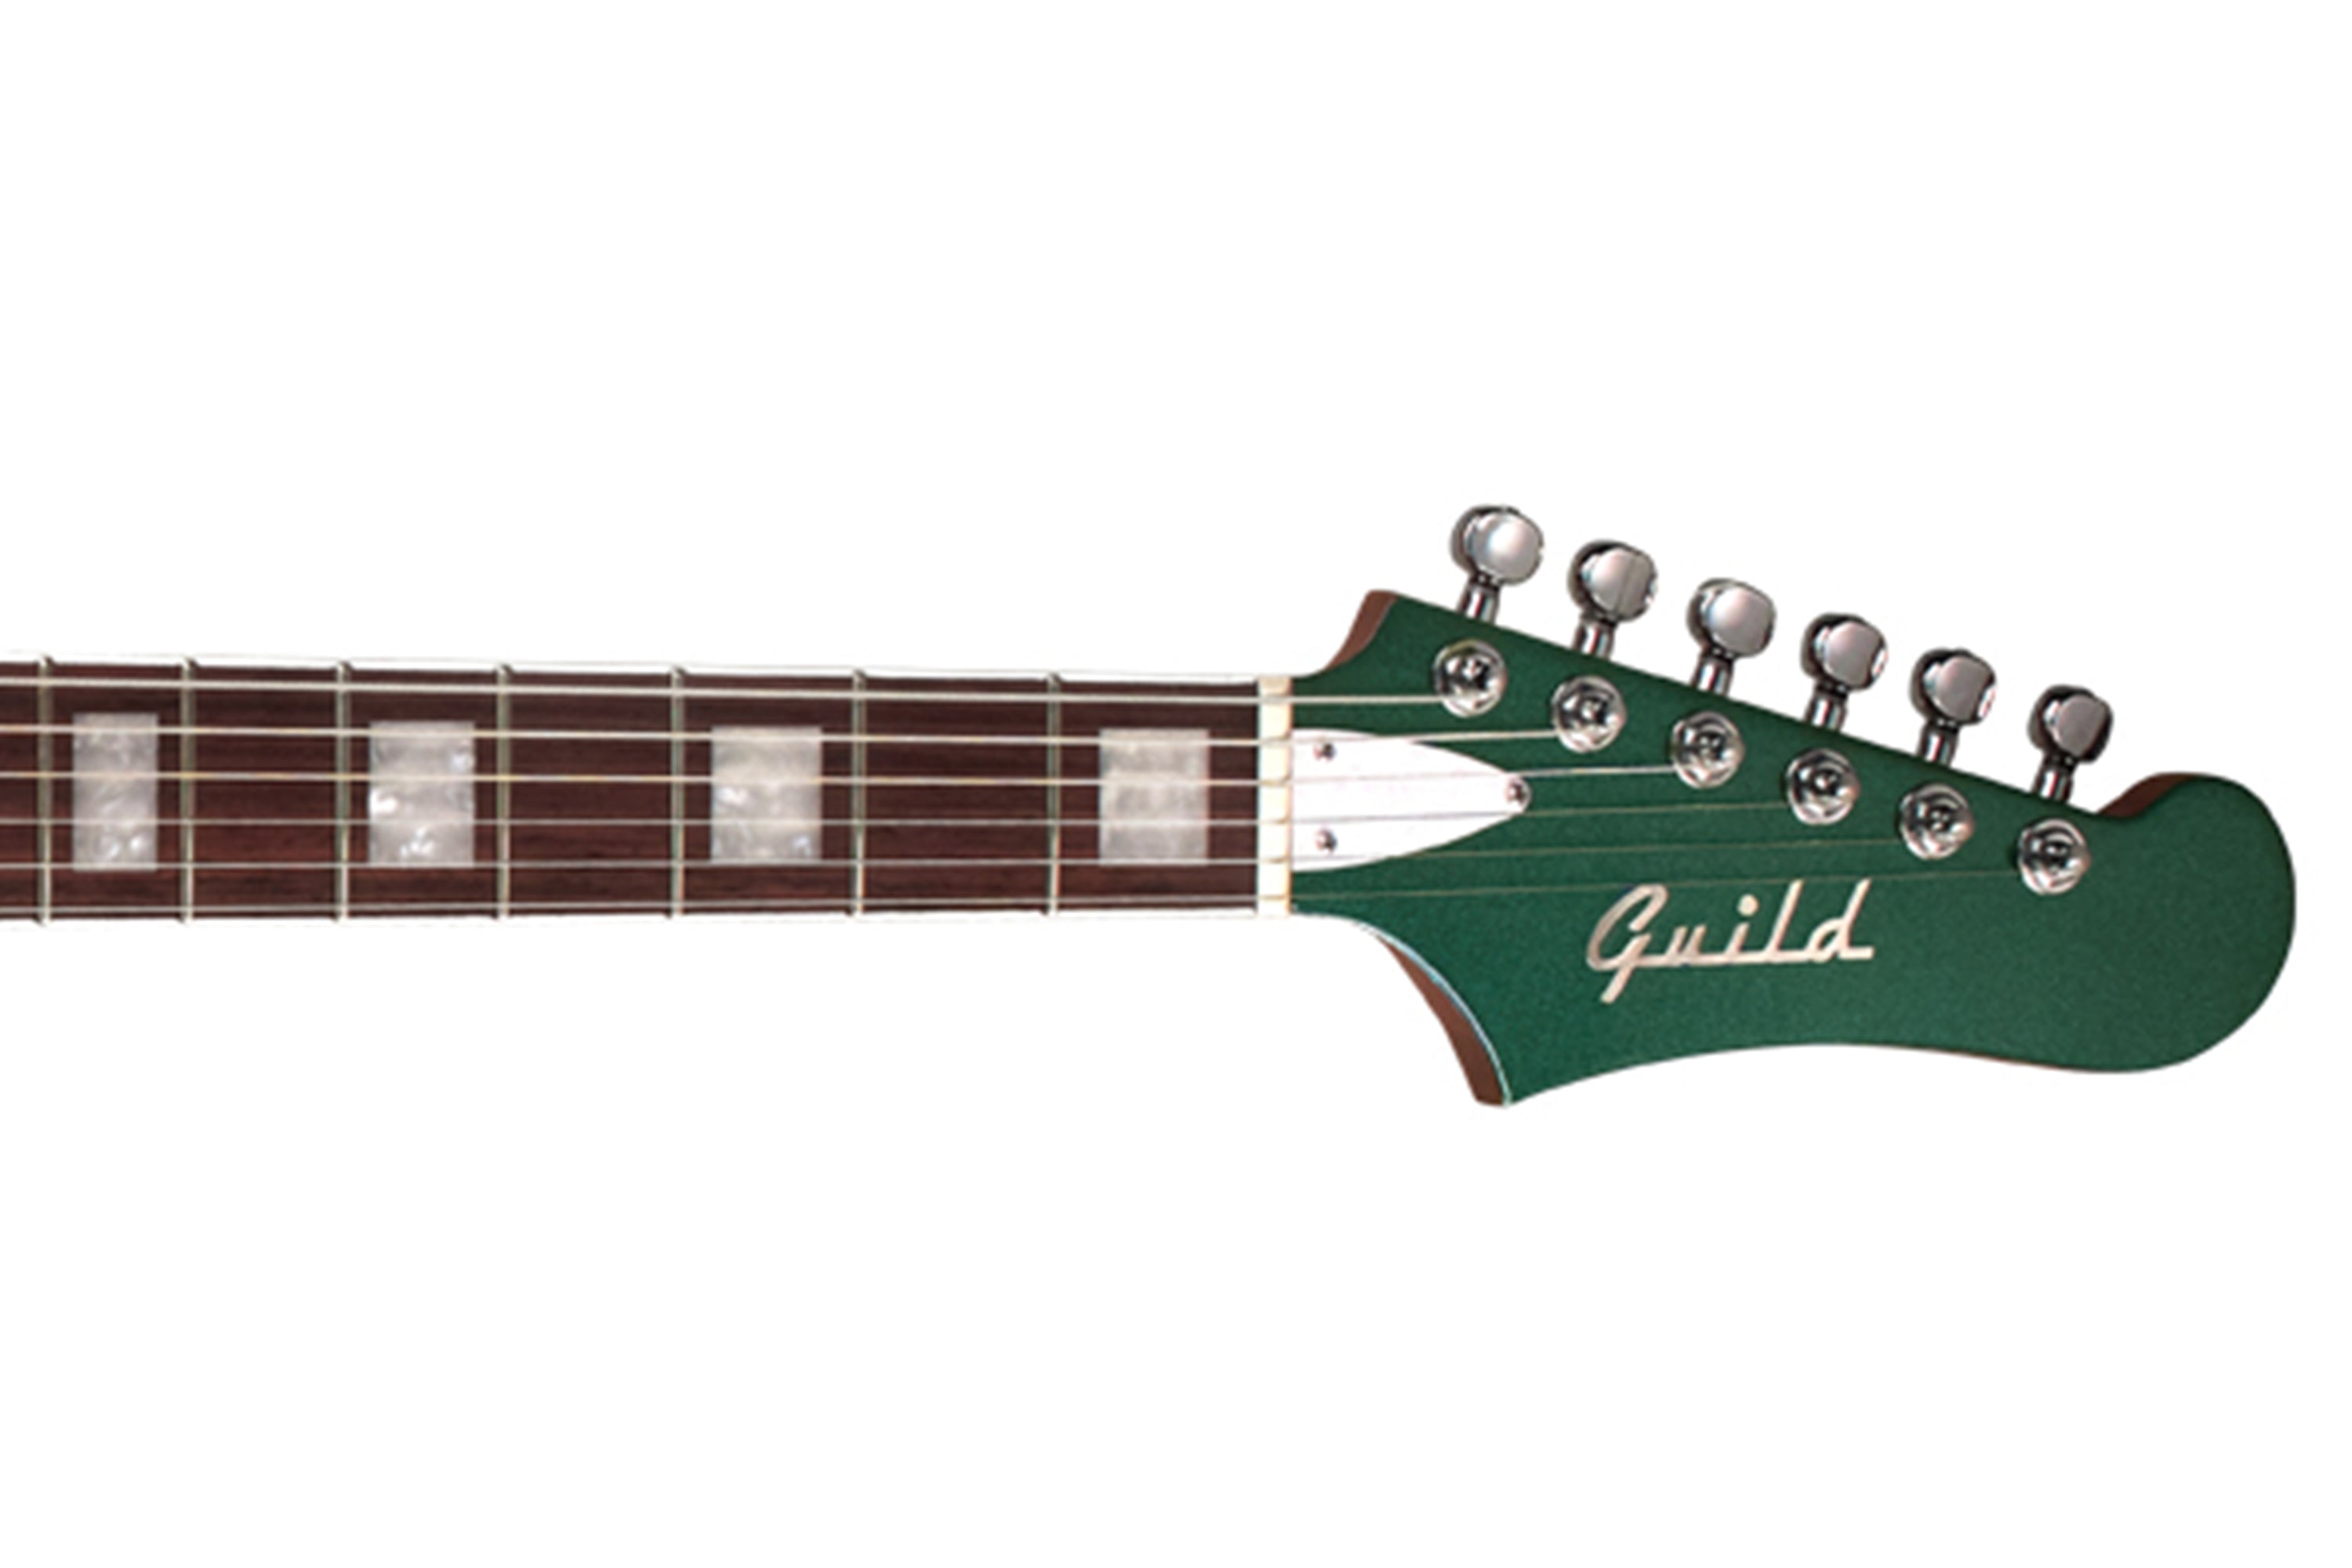 Guild Surfliner Deluxe Electric Guitar "Verde"